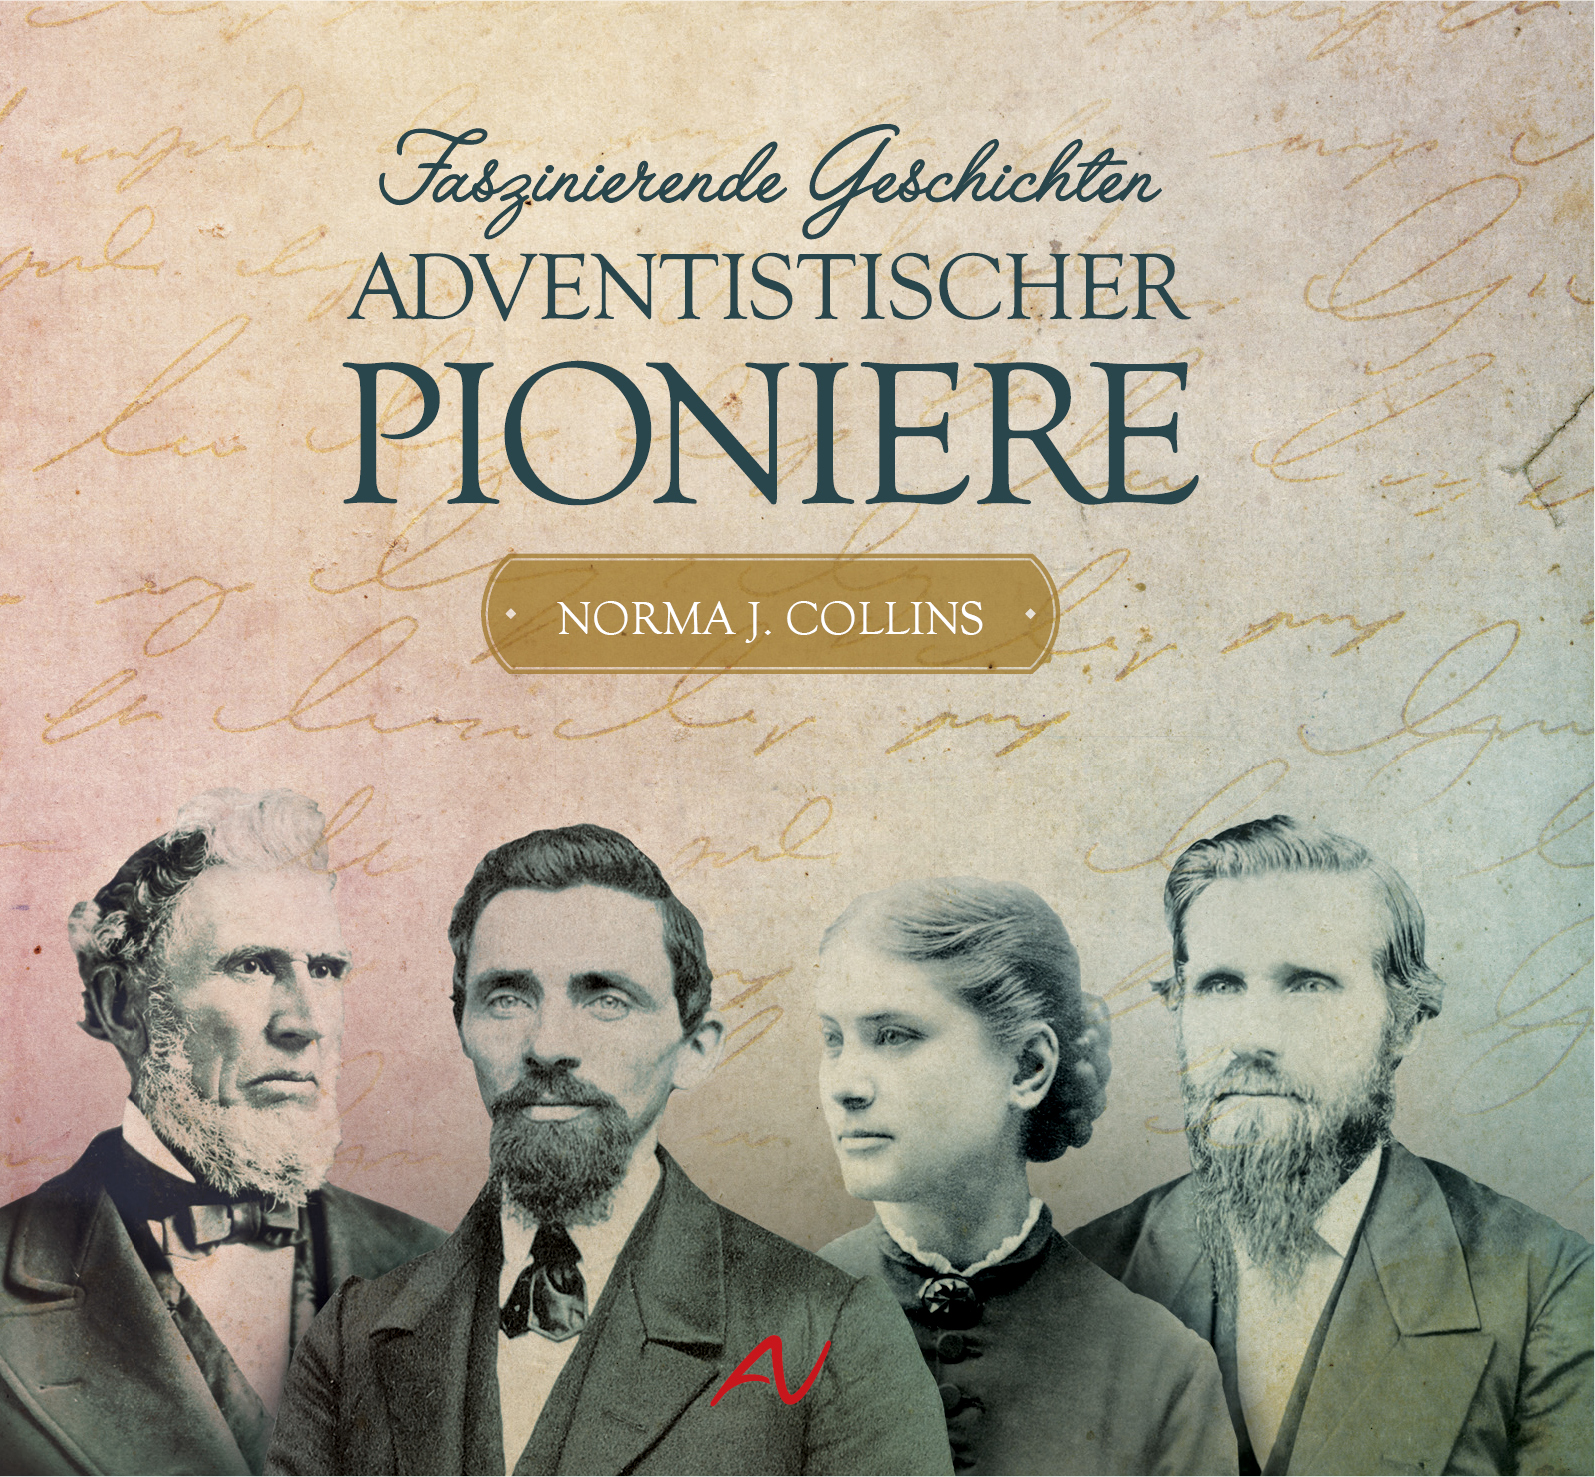 Faszinierende Geschichten adventistischer Pioniere 2